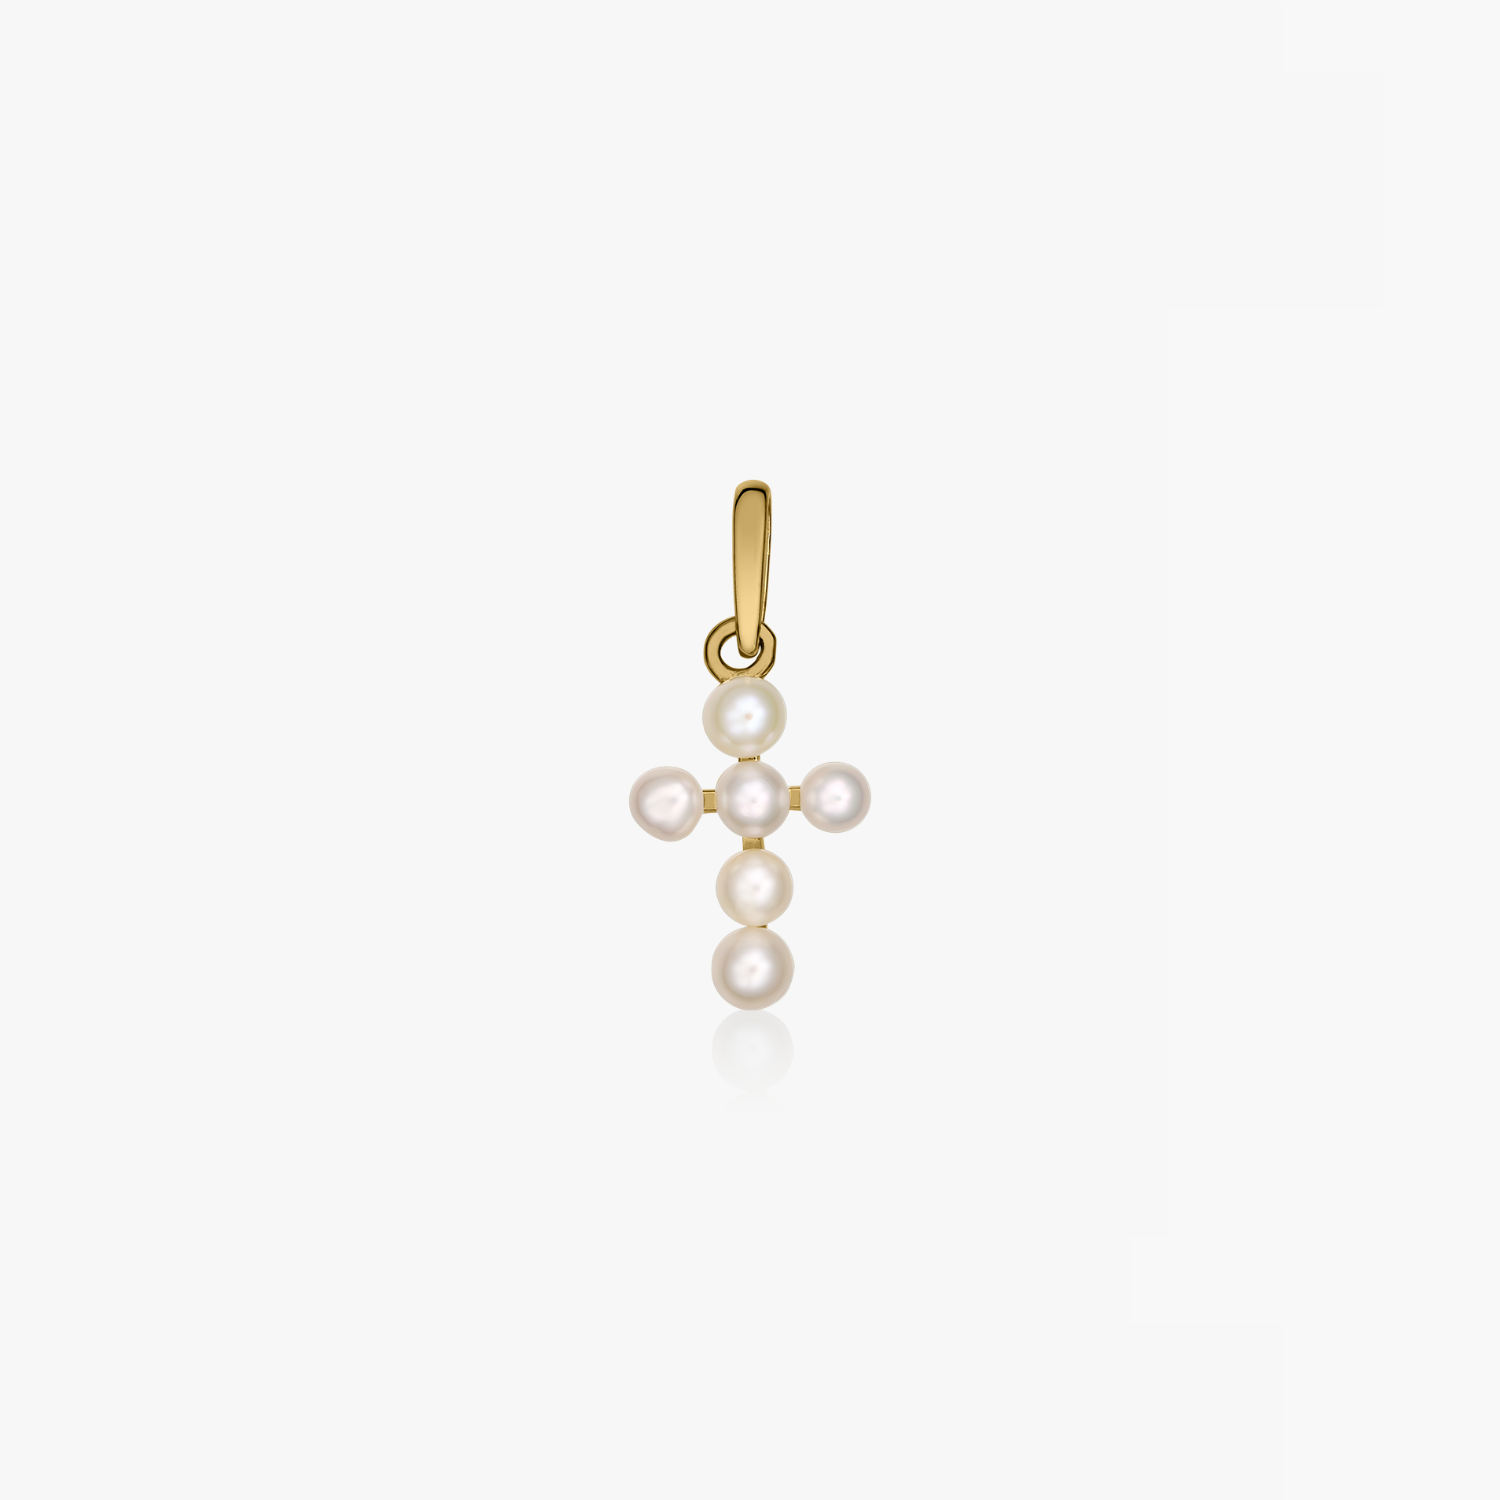 Pearl Cross gold pendant - Natural Pearls